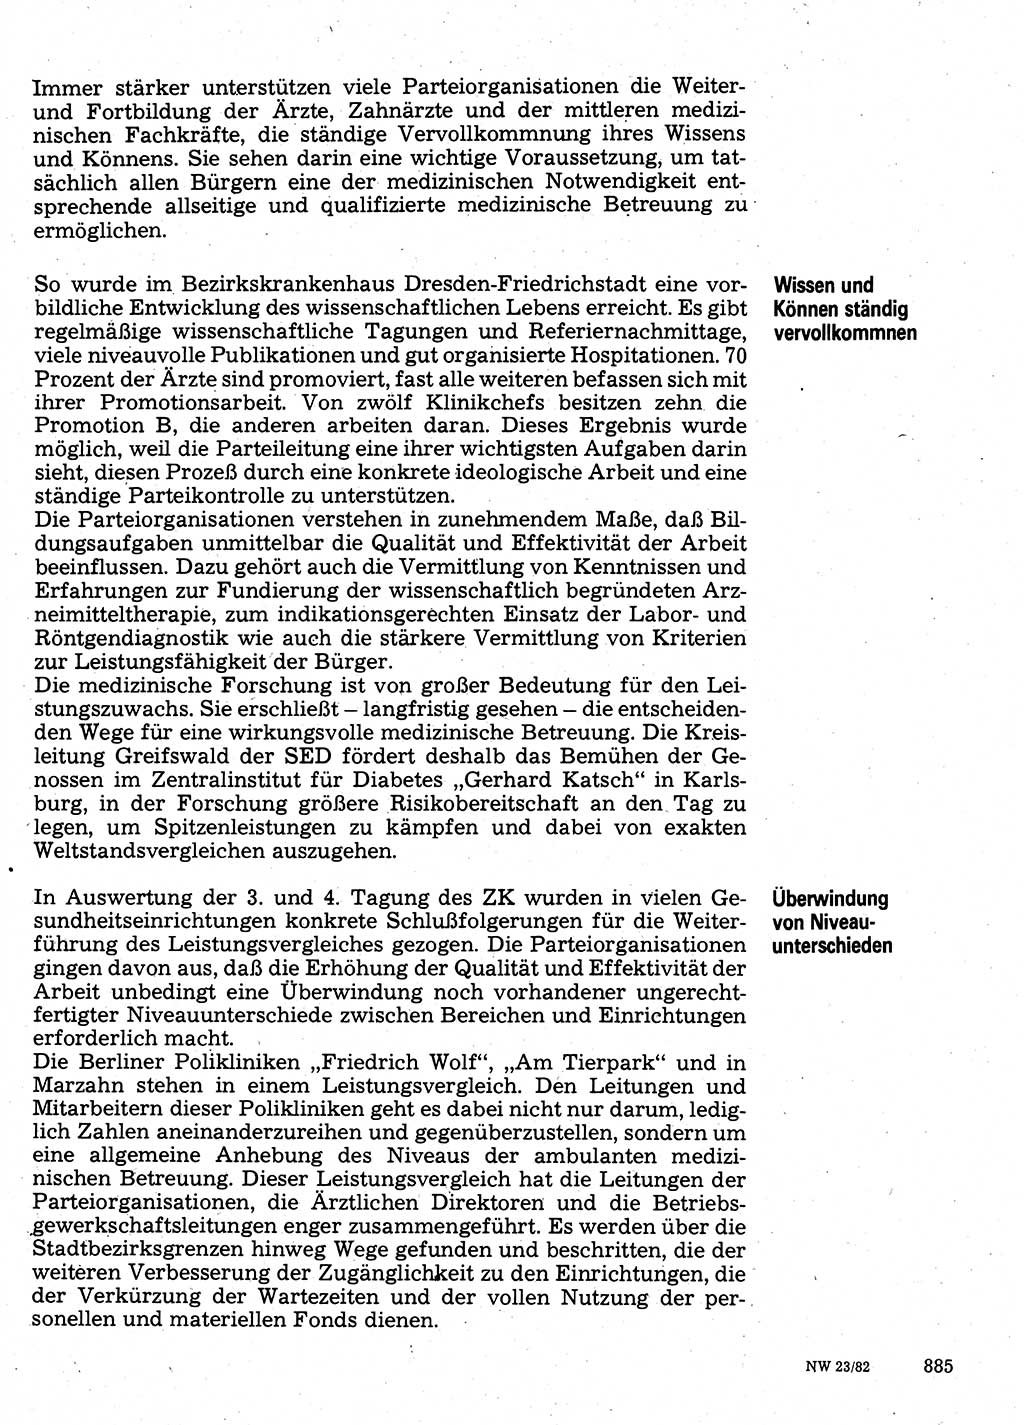 Neuer Weg (NW), Organ des Zentralkomitees (ZK) der SED (Sozialistische Einheitspartei Deutschlands) für Fragen des Parteilebens, 37. Jahrgang [Deutsche Demokratische Republik (DDR)] 1982, Seite 885 (NW ZK SED DDR 1982, S. 885)